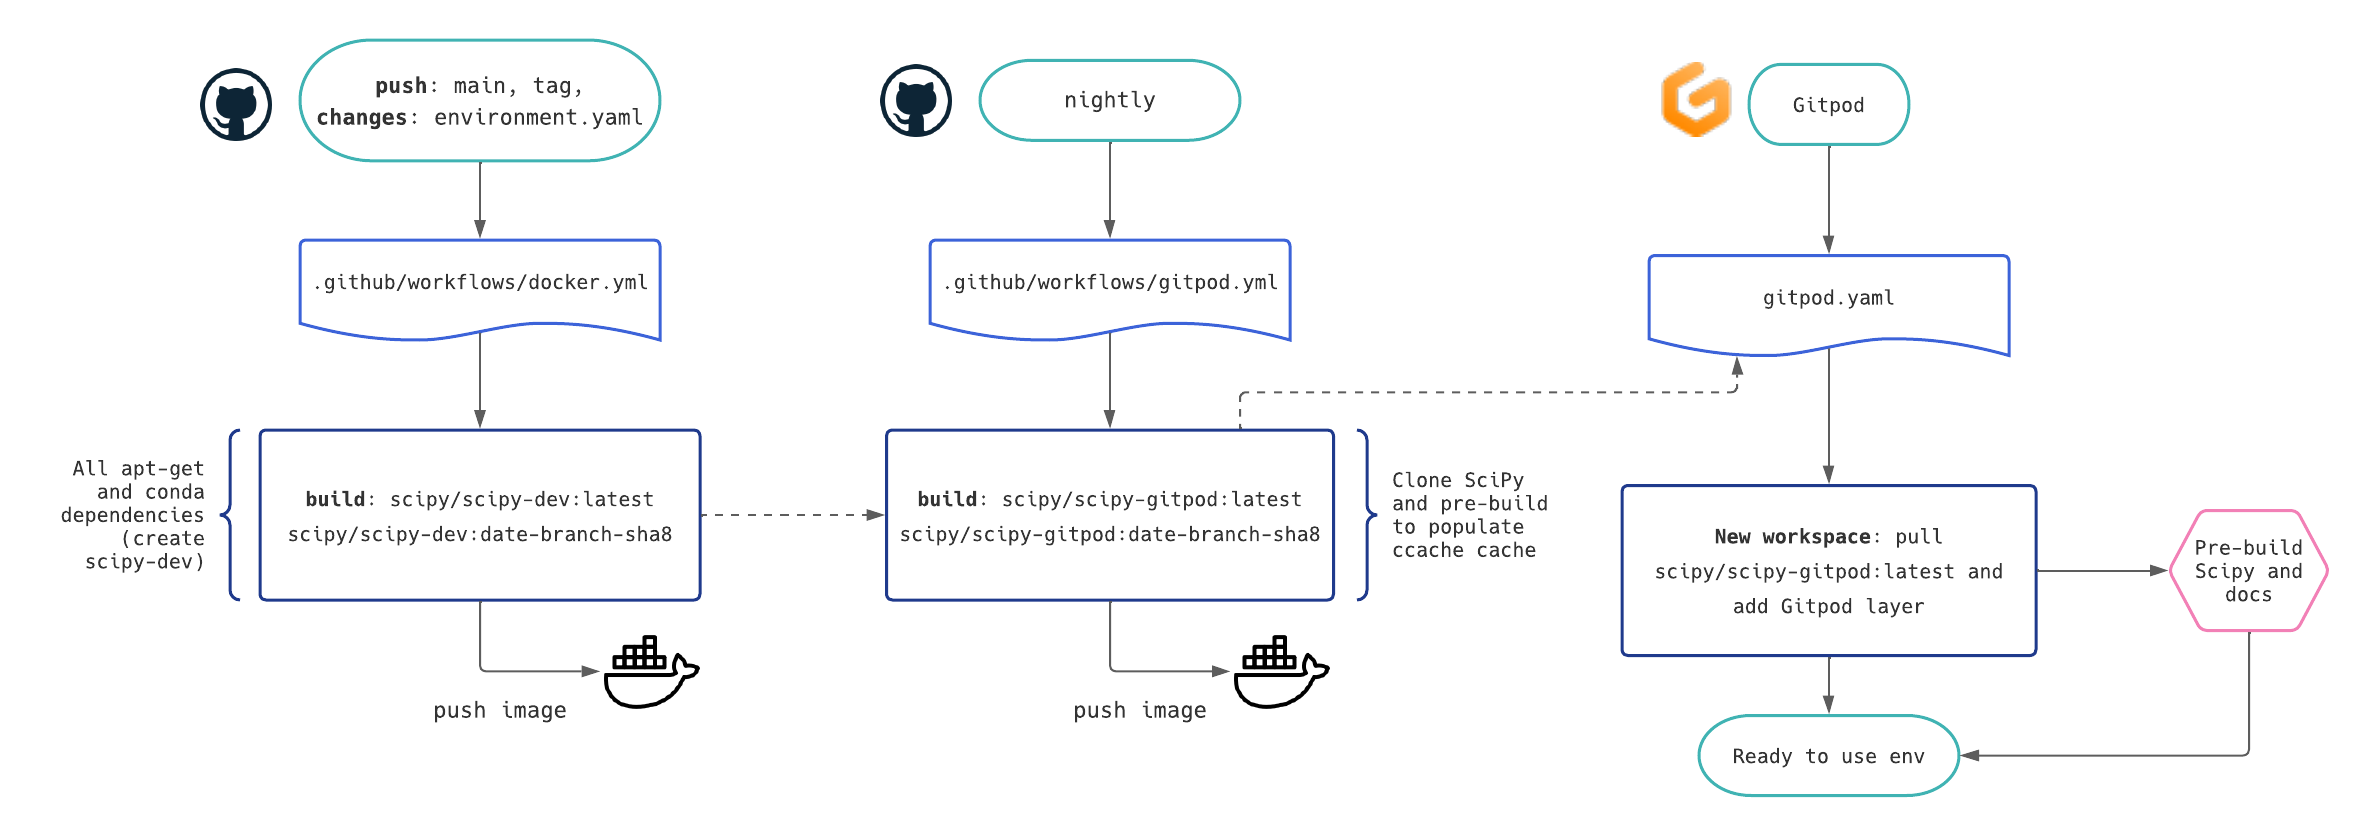 Diagram of how Docker images are built for Docker Hub and Gitpod in CI